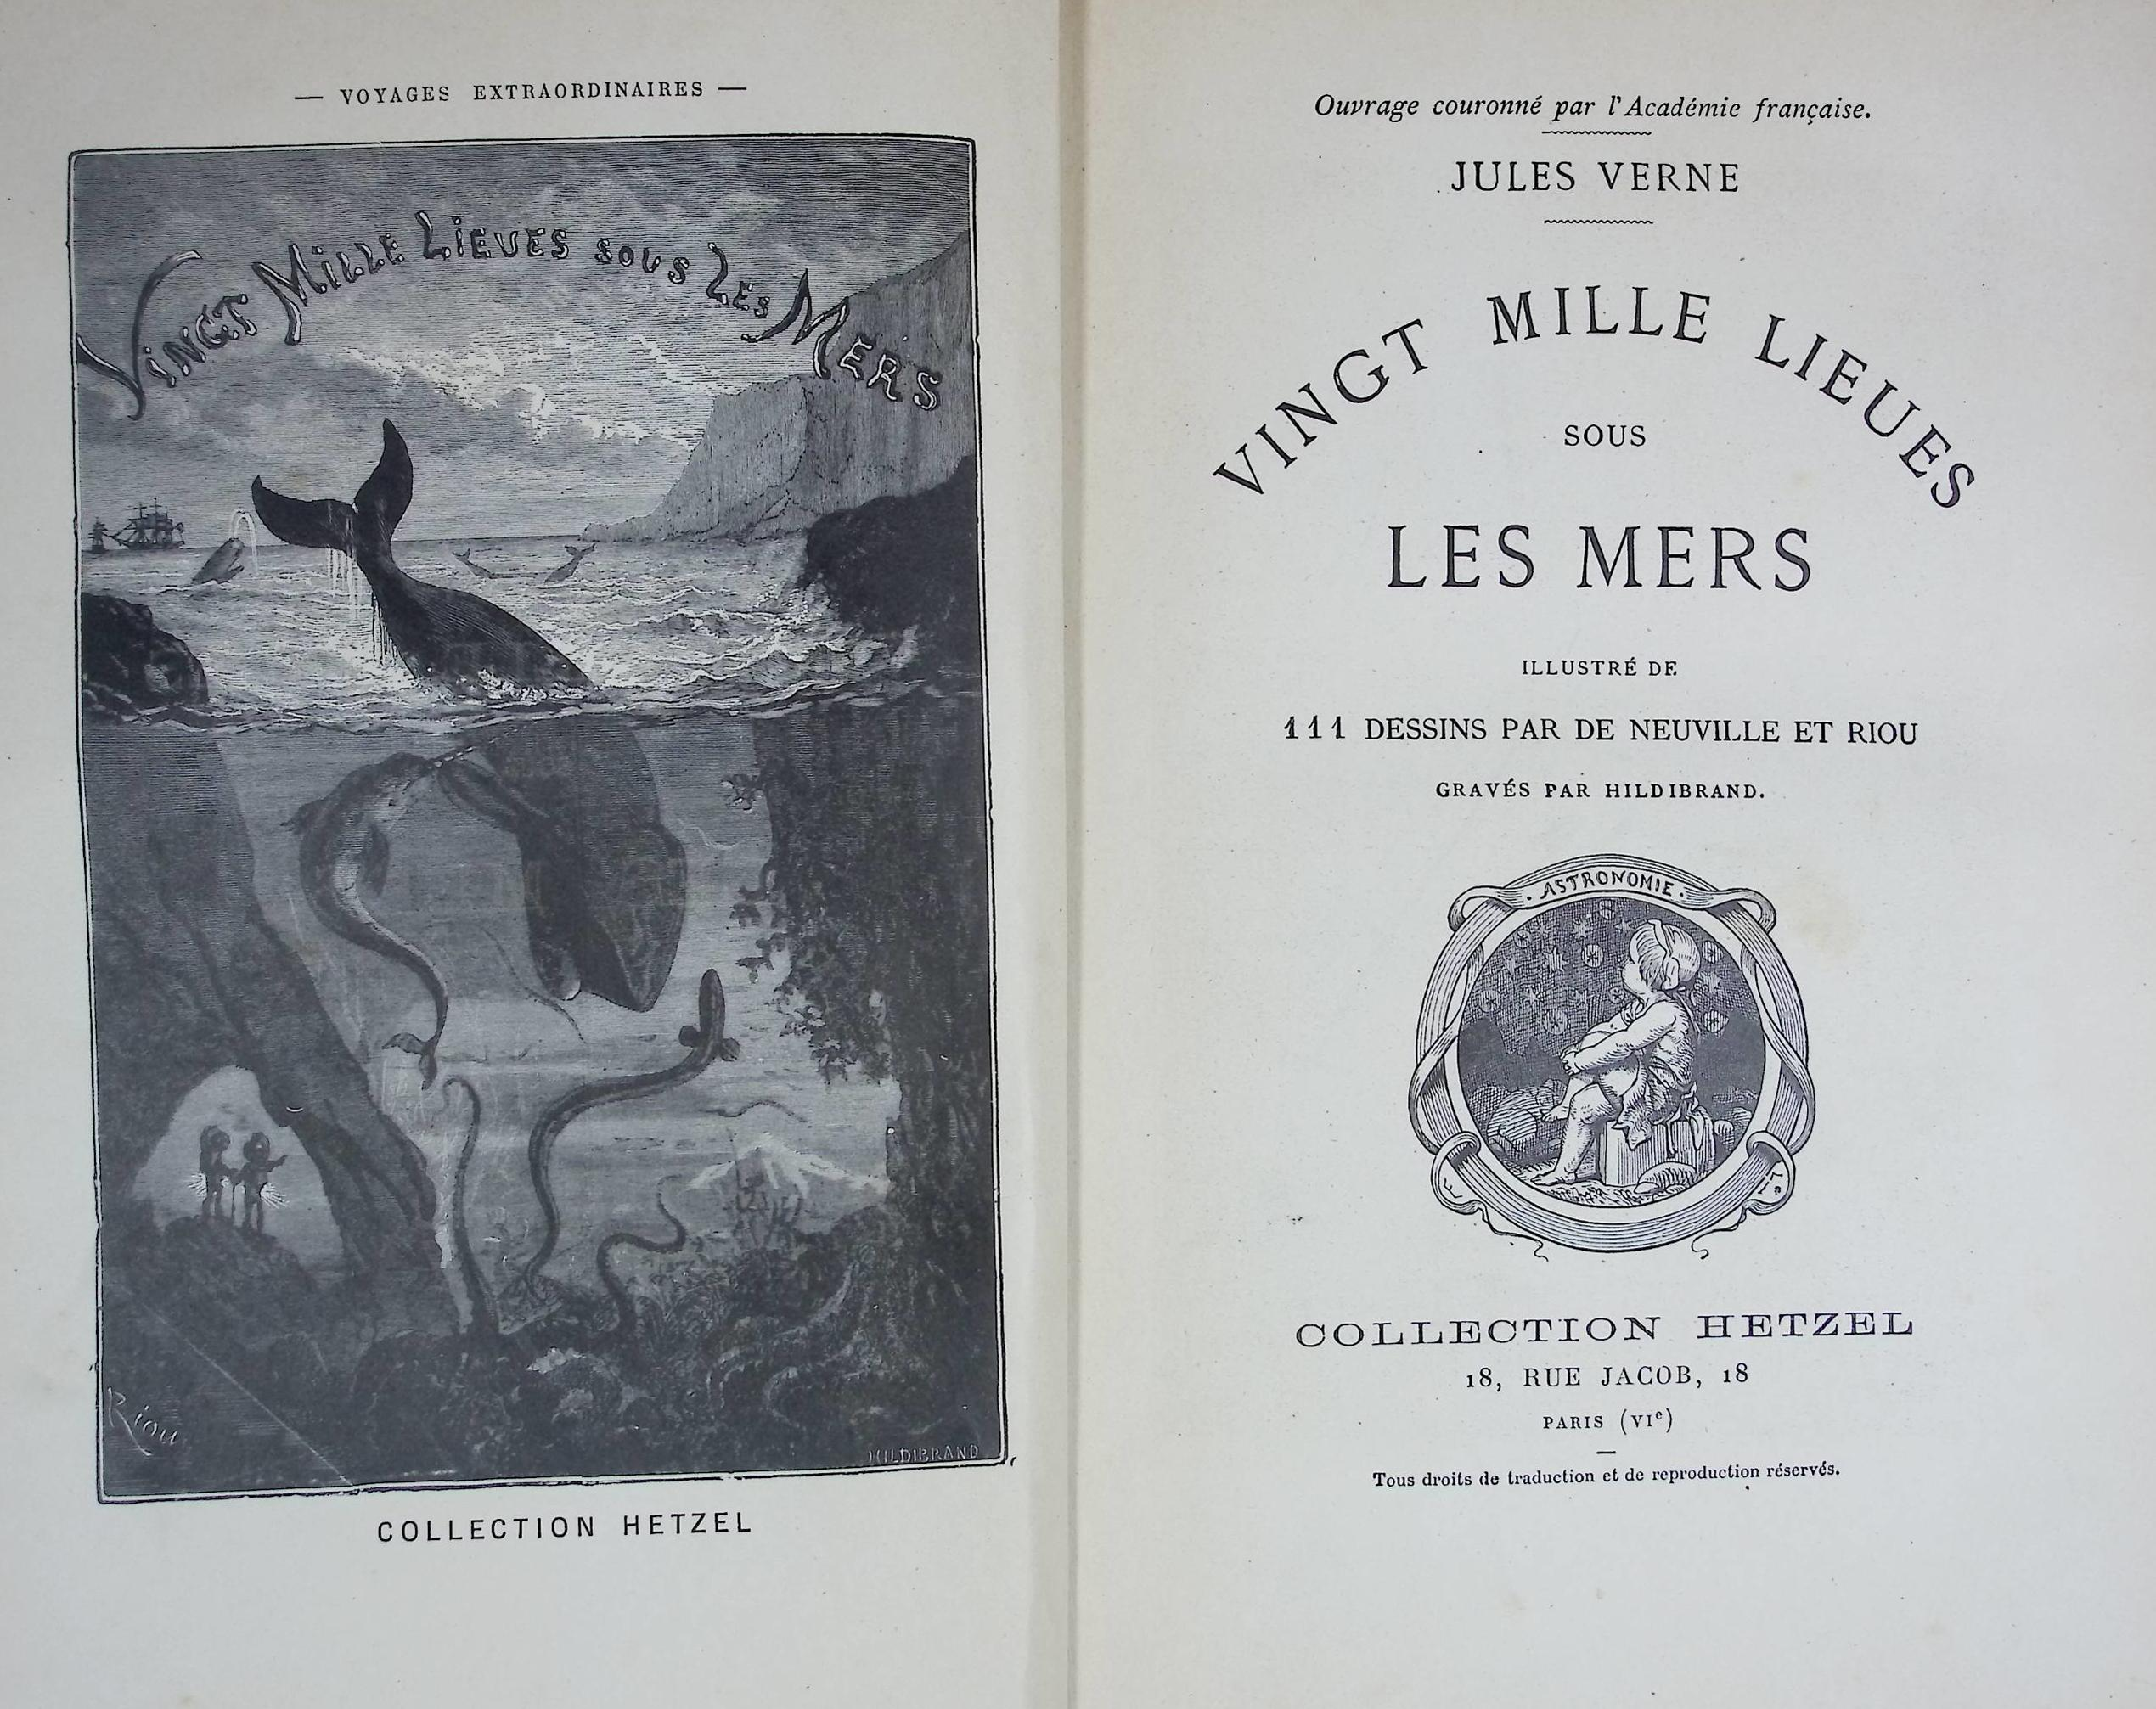 Vingt Mille Lieues Sous Les Mers [Twenty Thousand Leagues Under the Seas]